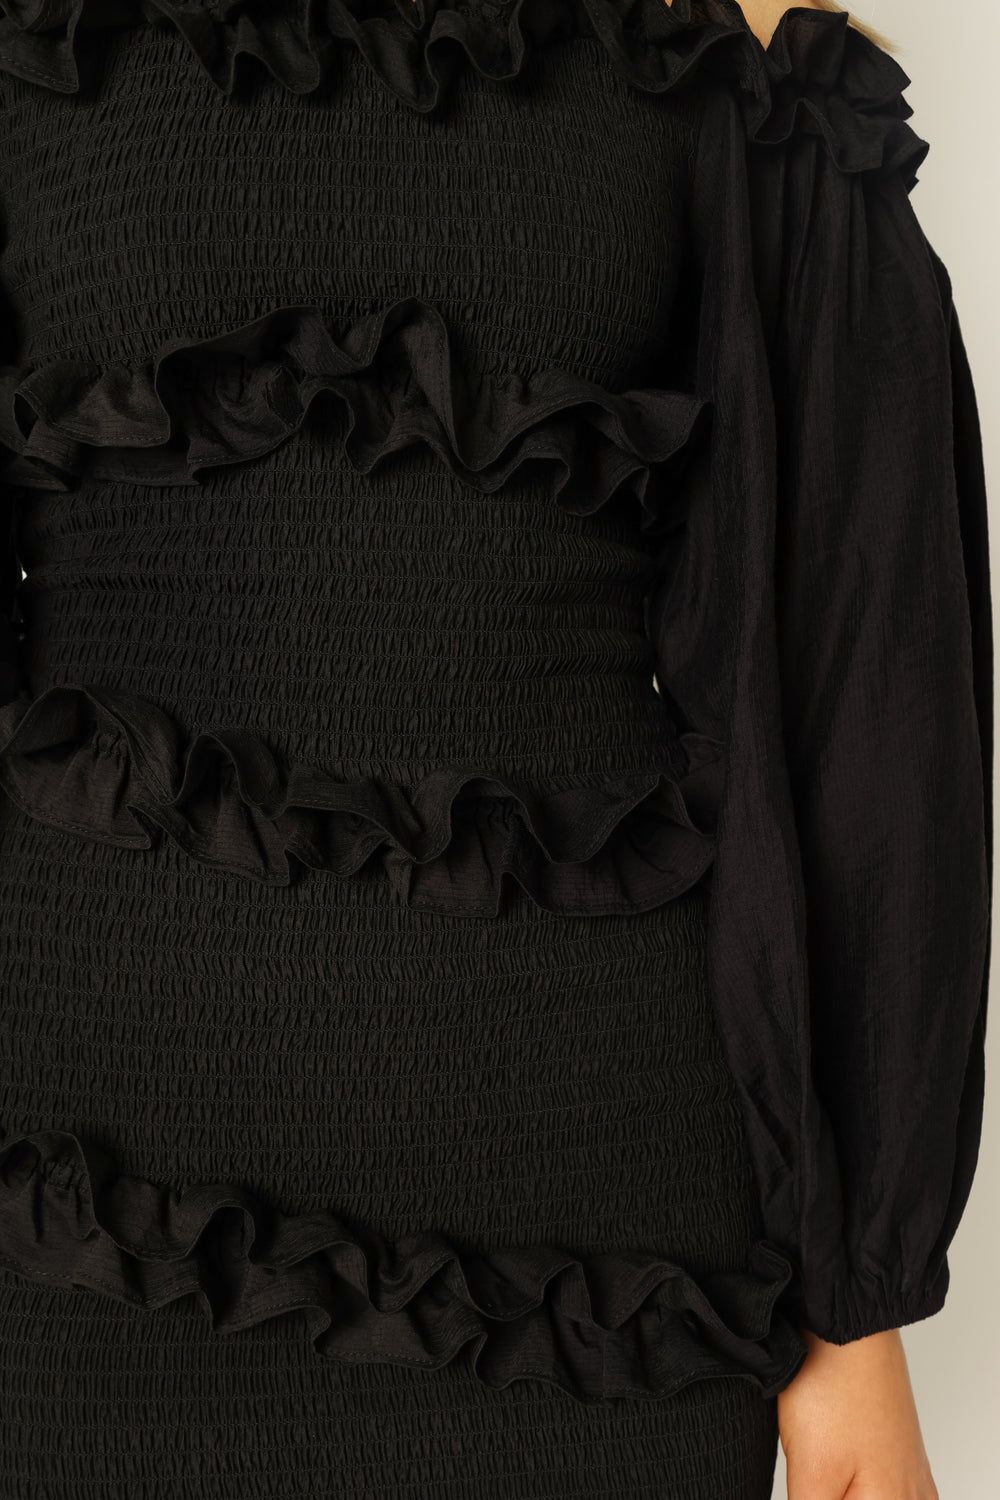 Petal and Pup USA DRESSES Reba Off Shoulder Mini Dress - Black